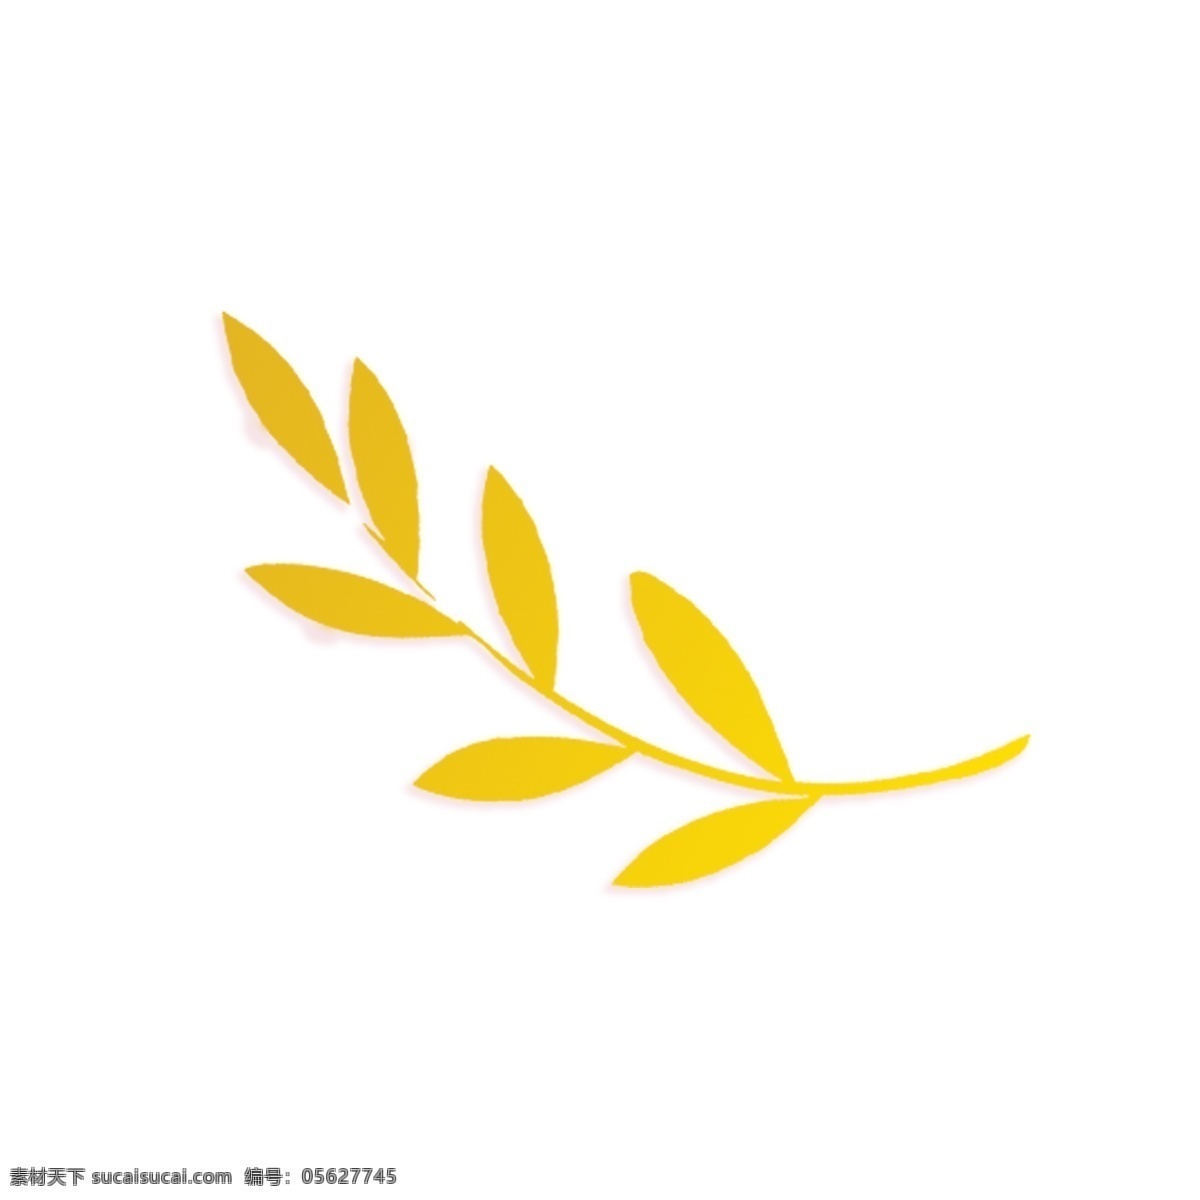 长长 枝叶 免 抠 图 小叶子 黄色的枝叶 新鲜的叶子 绿色植物 绿色生态 黄色枝条 黄色的叶子 免抠图